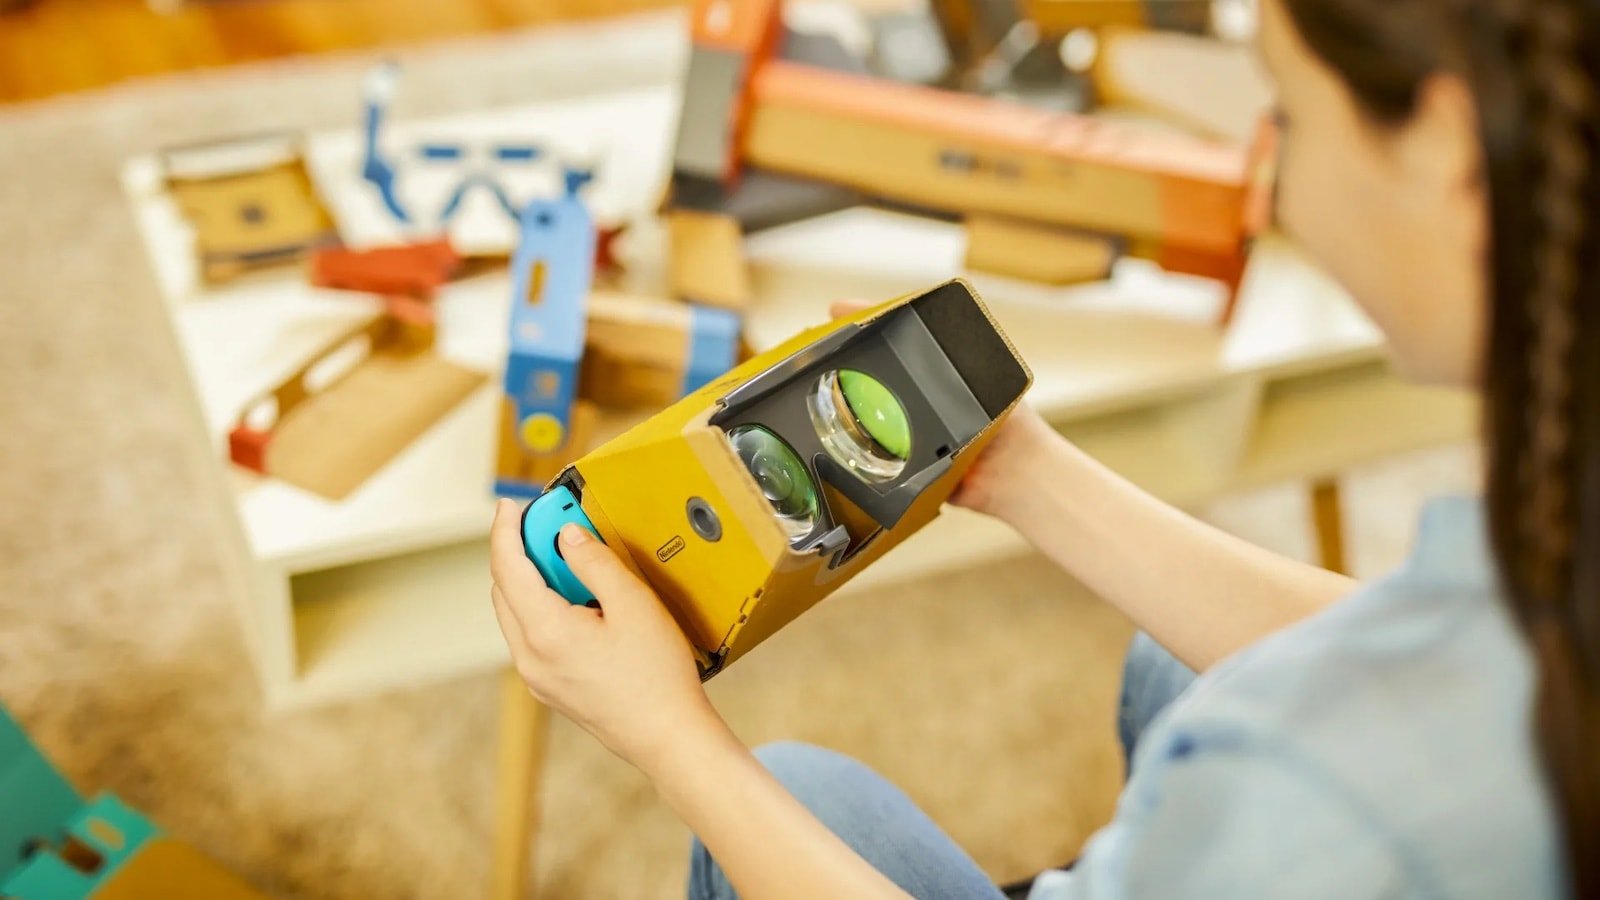 Nintendo Labo Toy-Con 04 VR kit allows kids to enjoy virtual reality